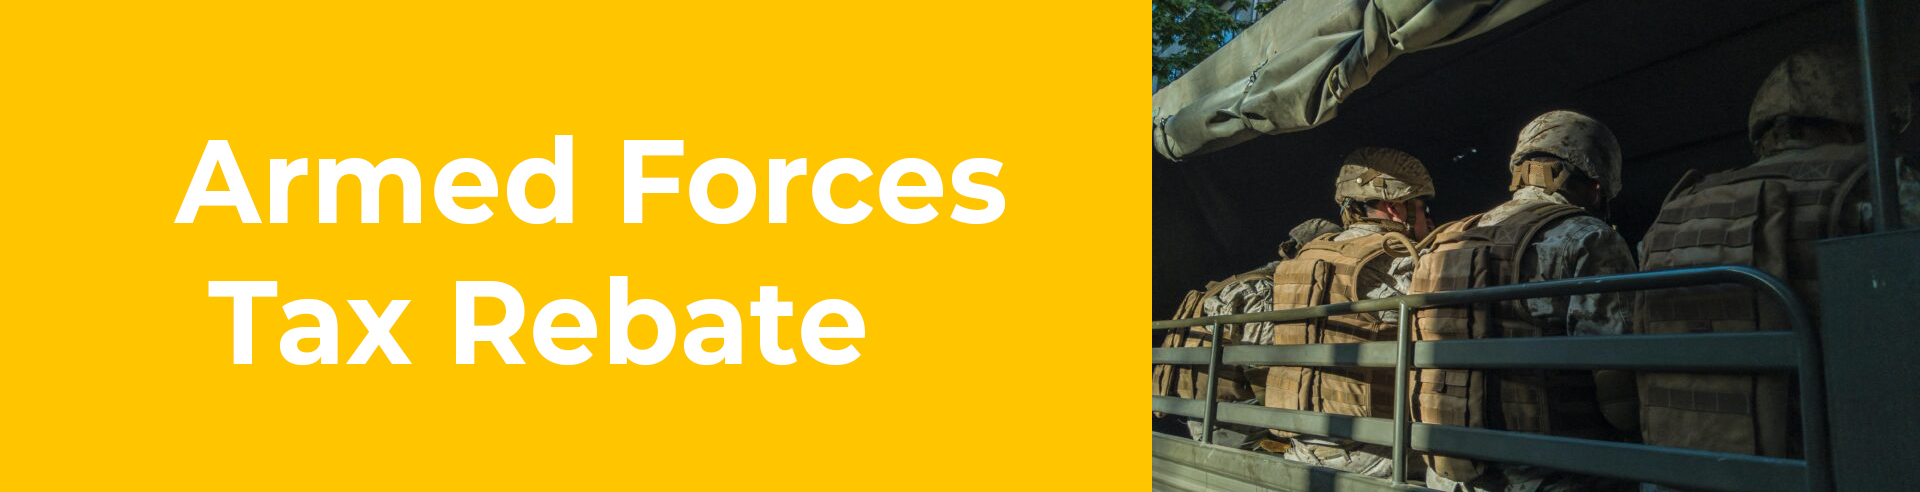 Armed Forces Tax Rebate Tax Rebate Online